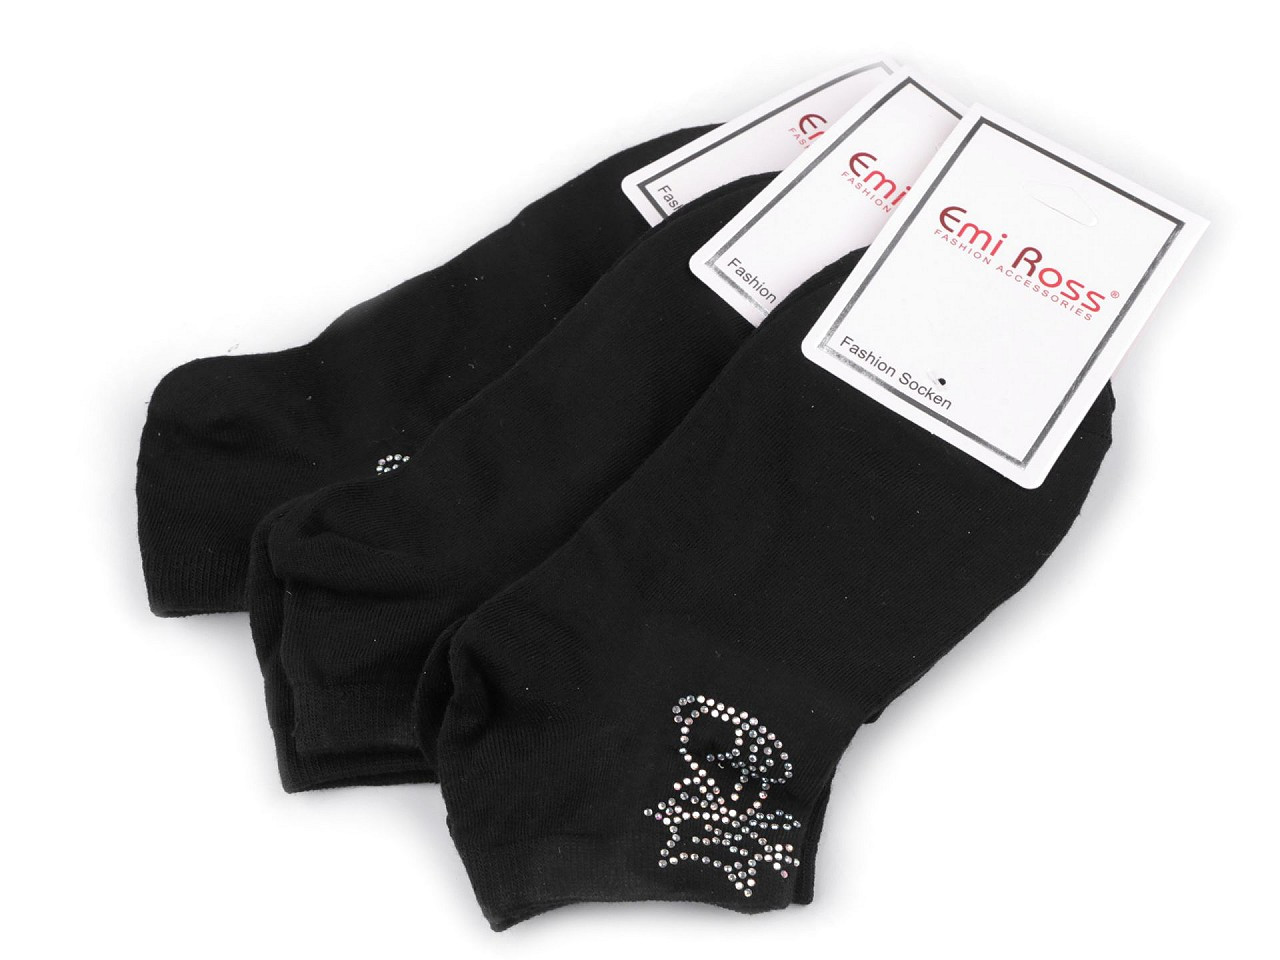 Dámské bavlněné ponožky kotníkové s kamínky Emi Ross, barva 51 (39-42) černá